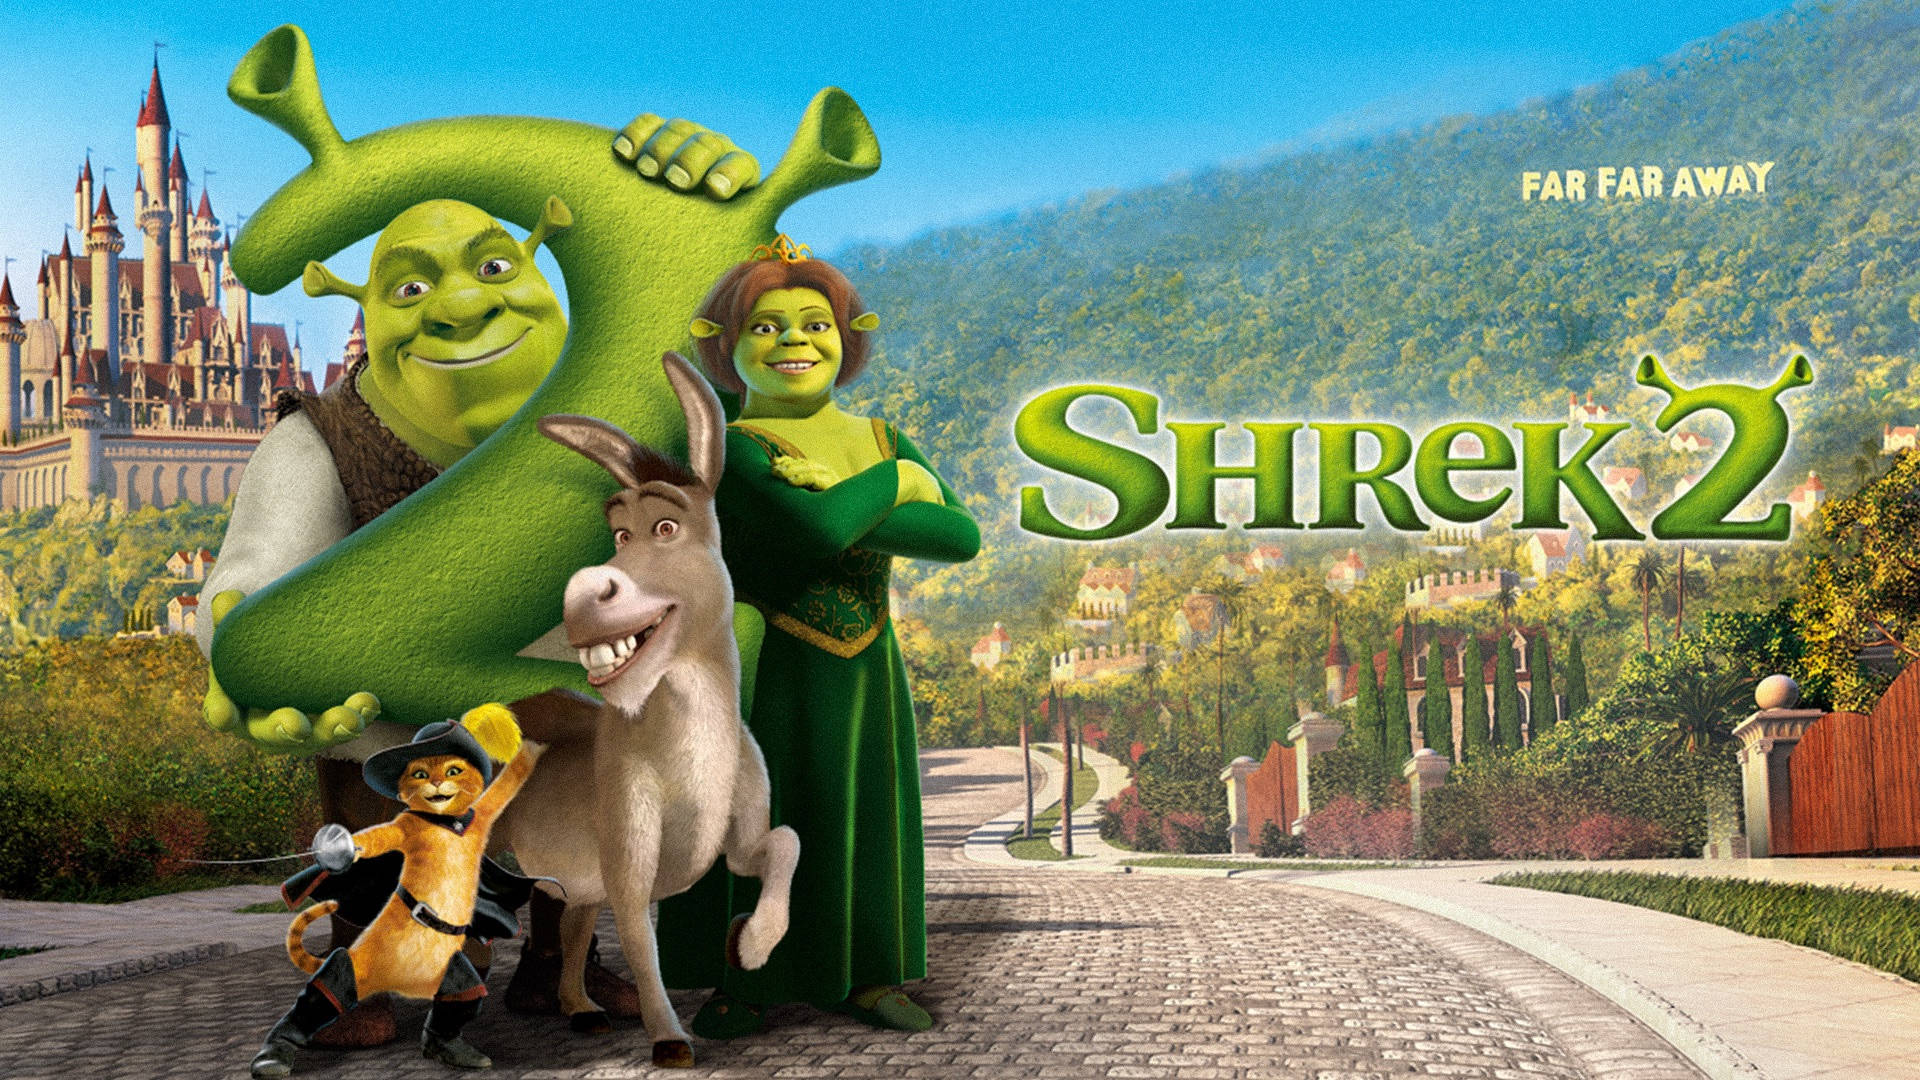 Shrek 2 Poster Scenery Wallpaper